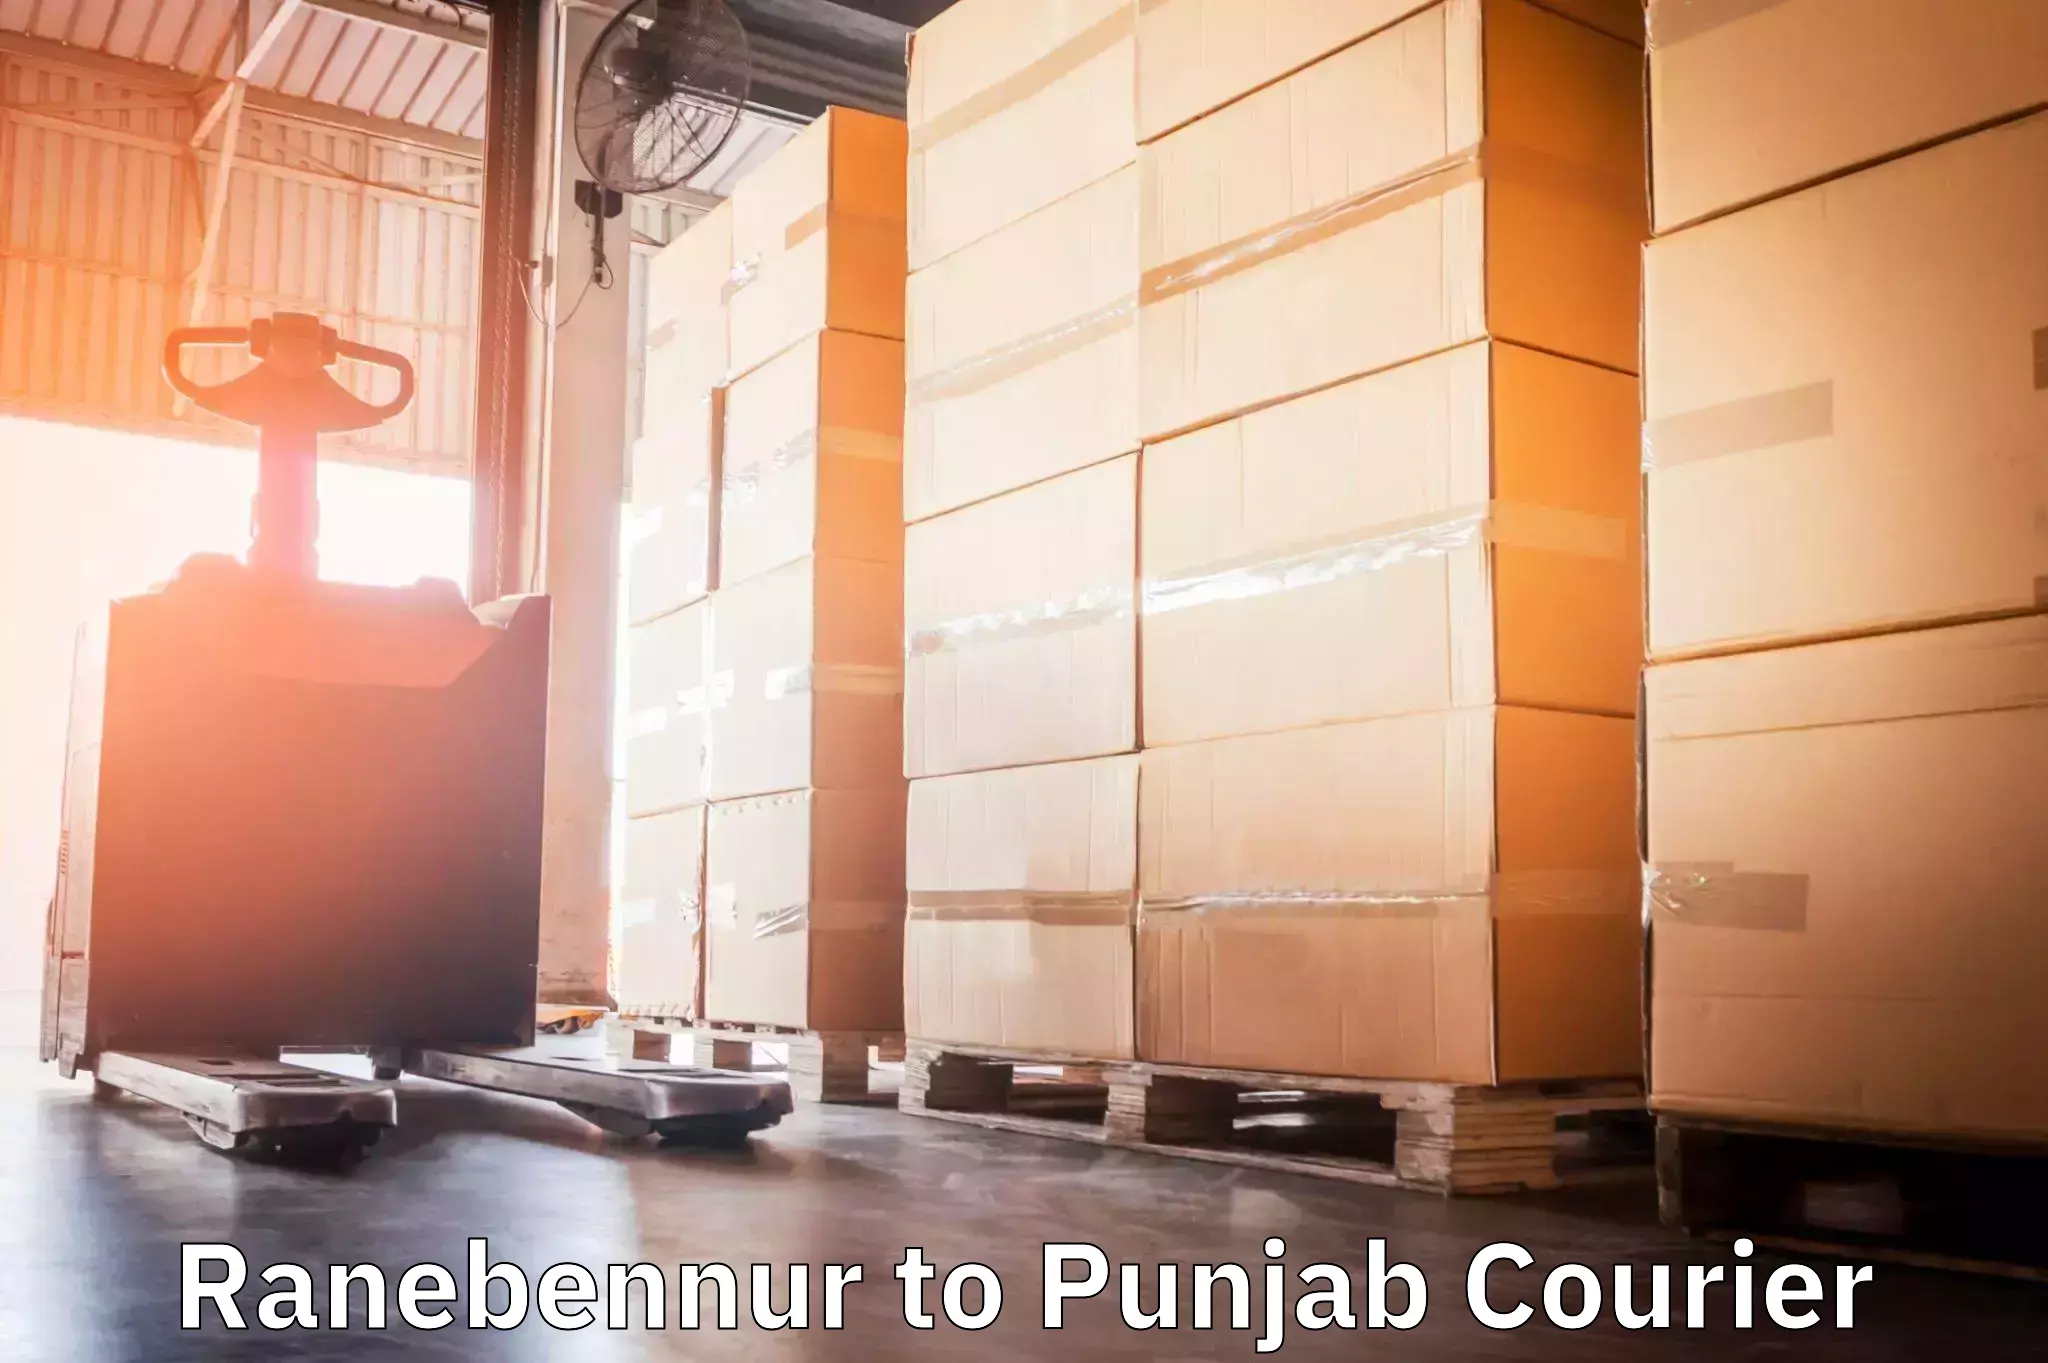 Flexible delivery schedules Ranebennur to Punjab